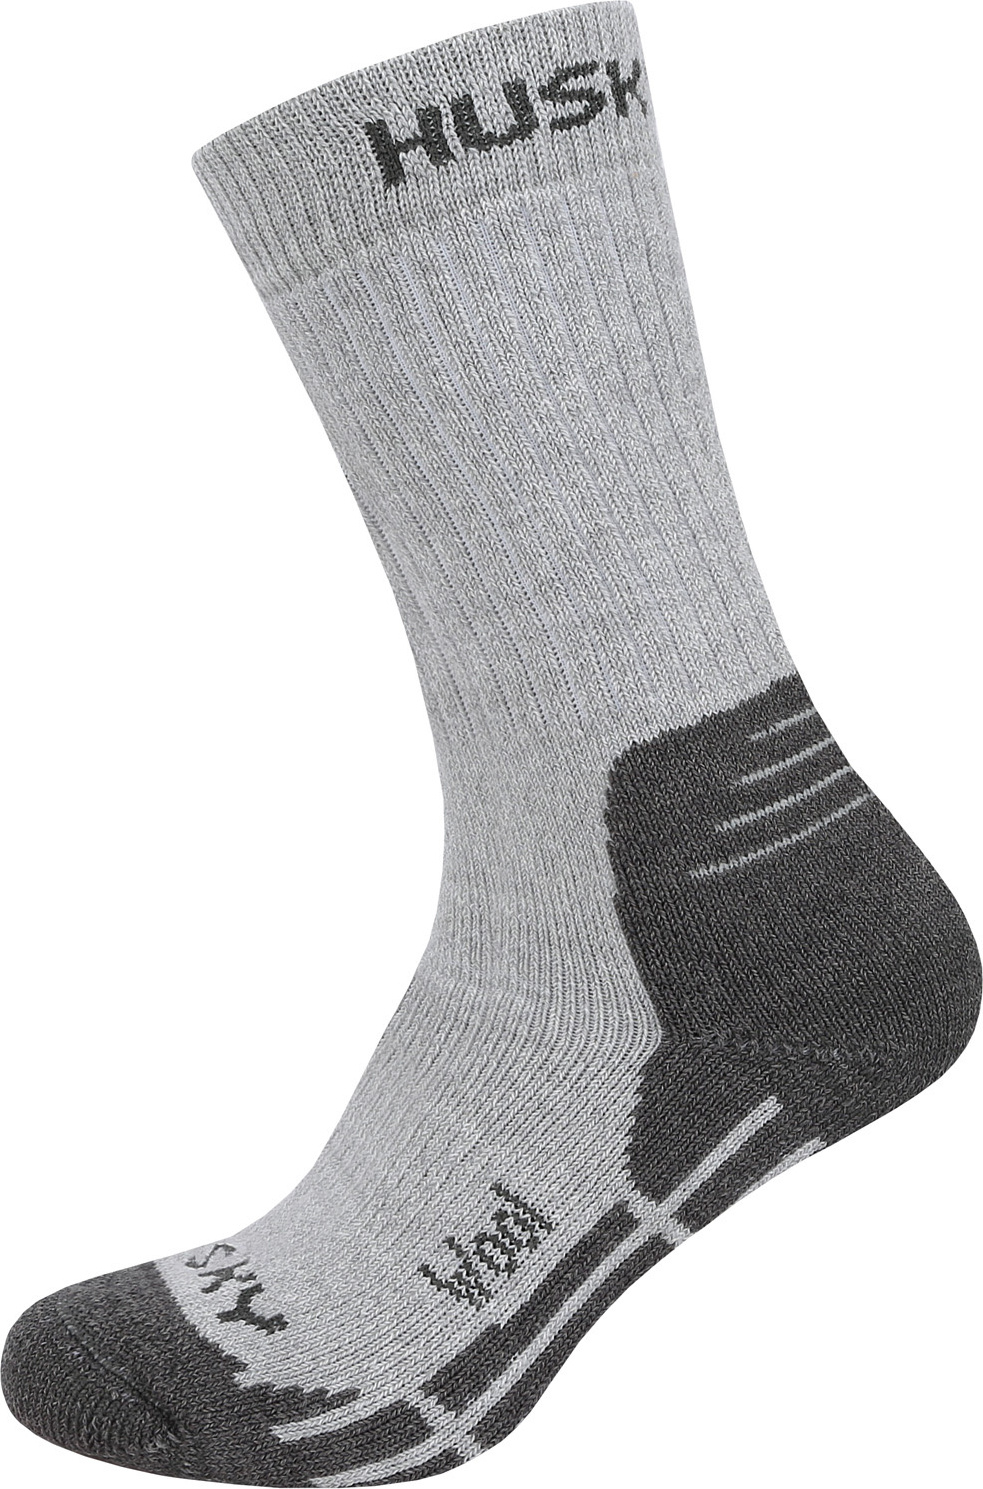 Ponožky HUSKY All Wool sv. šedá Velikost: XL (45-48)